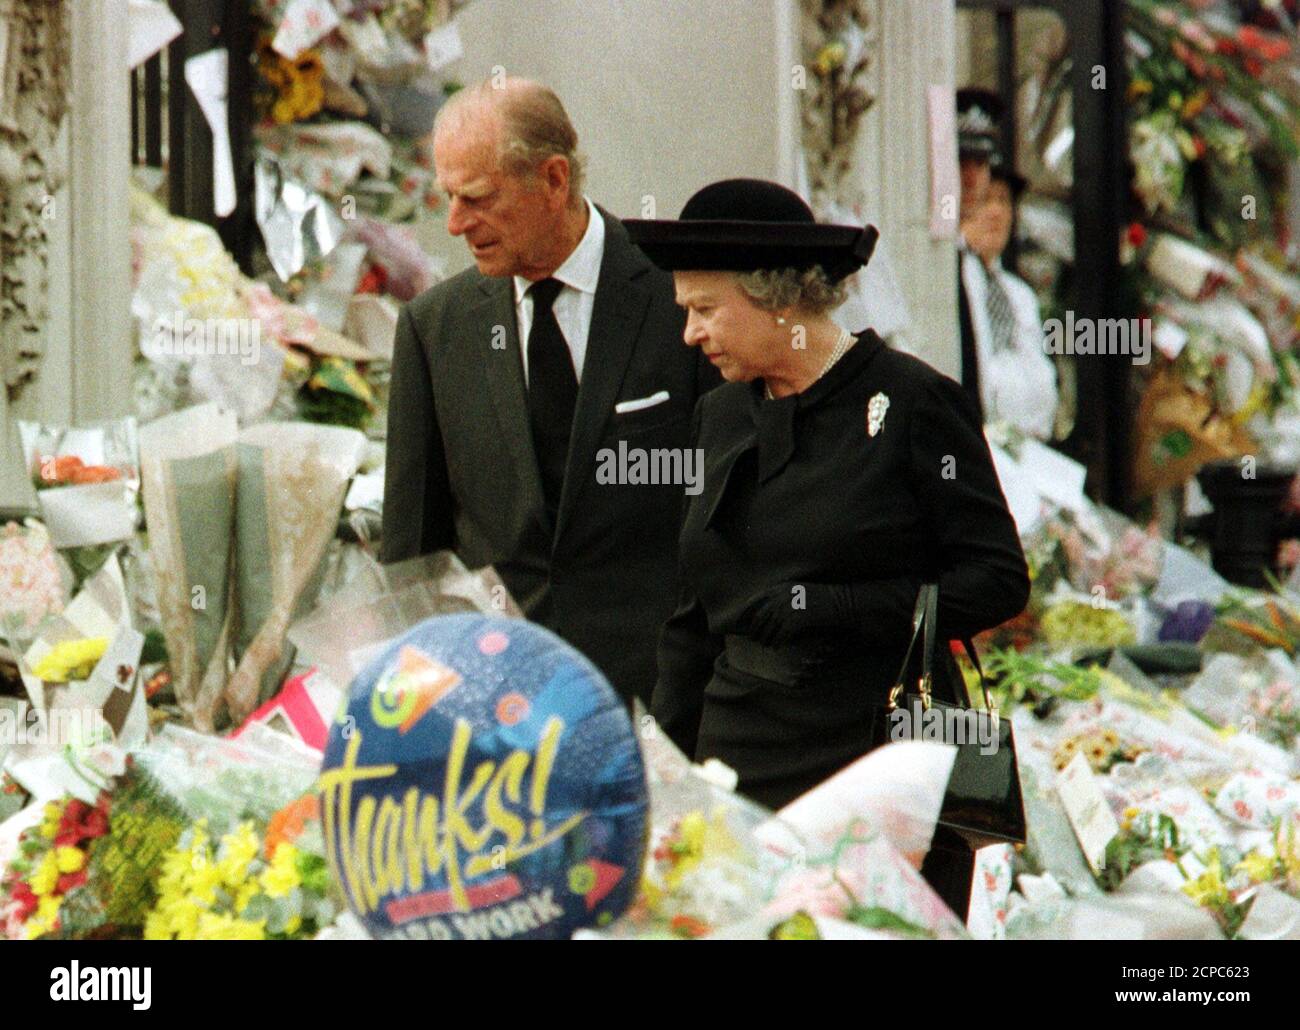 La Regina e Duca di Edimburgo guardano alla massa di tributi floreali deposti fuori Buckingham Palace in memoria di Diana, Principessa del Galles, 5 settembre. La principessa sarà sepolta nella proprietà di famiglia di Althrop House dopo una cerimonia all'Abbazia di Westminster domani. REGNO UNITO DIANA Foto Stock